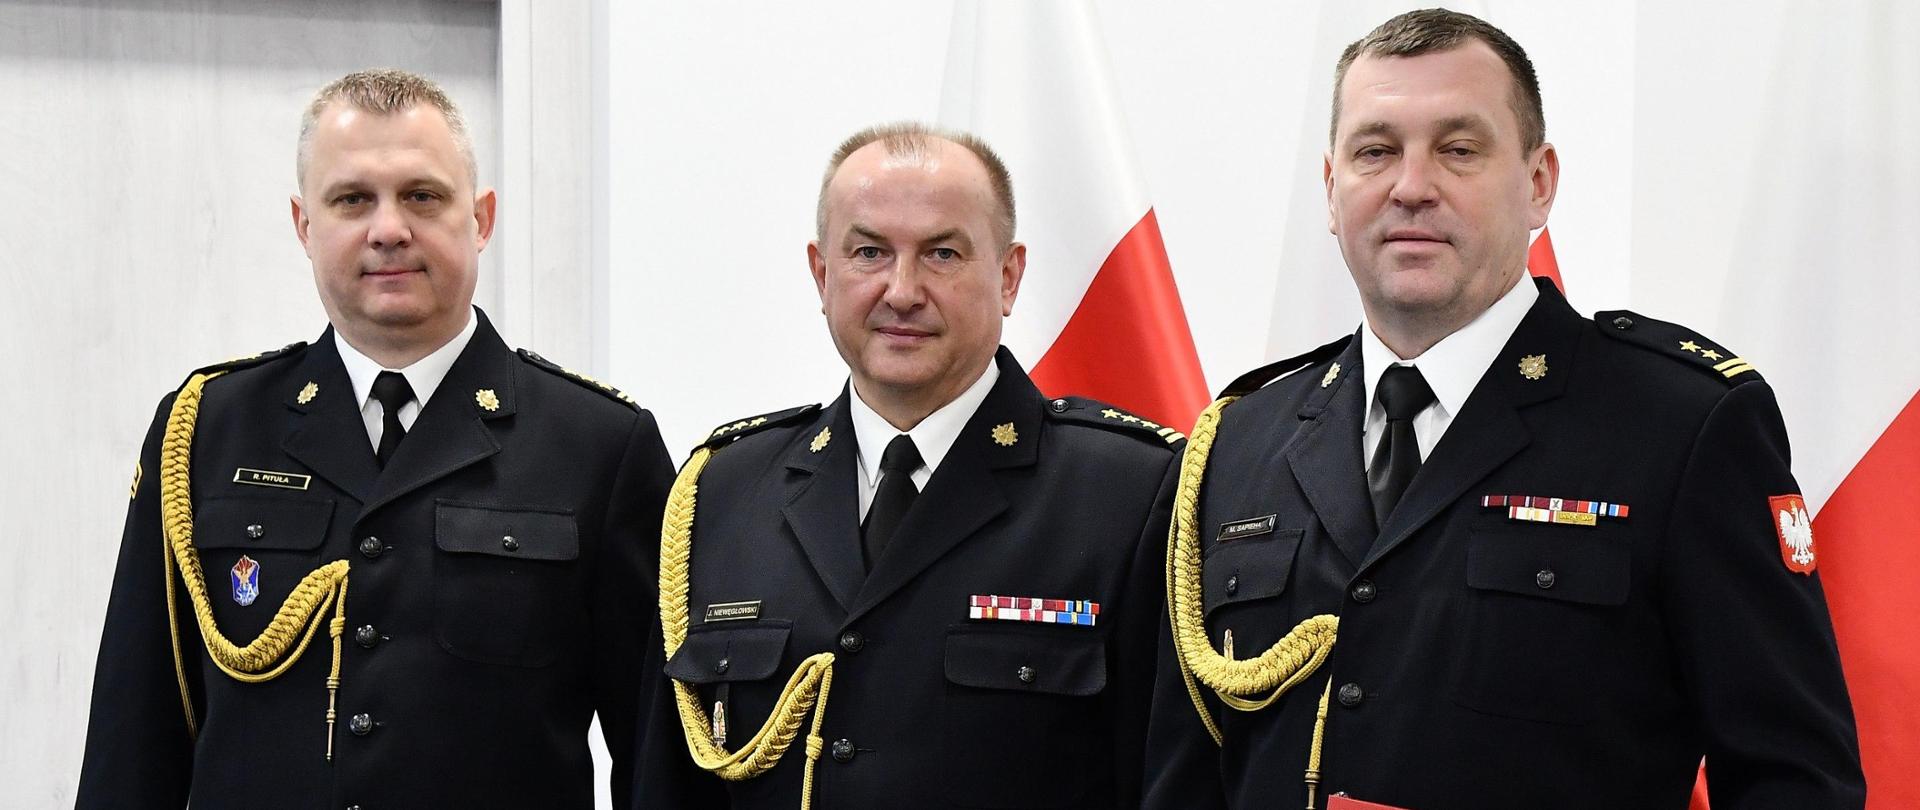 Trzech strażaków w mundurach wyjściowych ze sznurem stoi obok siebie jeden z mężczyzn trzyma czerwoną teczkę za nimi ustawione są trzy flagi Polski oraz znajdują się drzwi. 